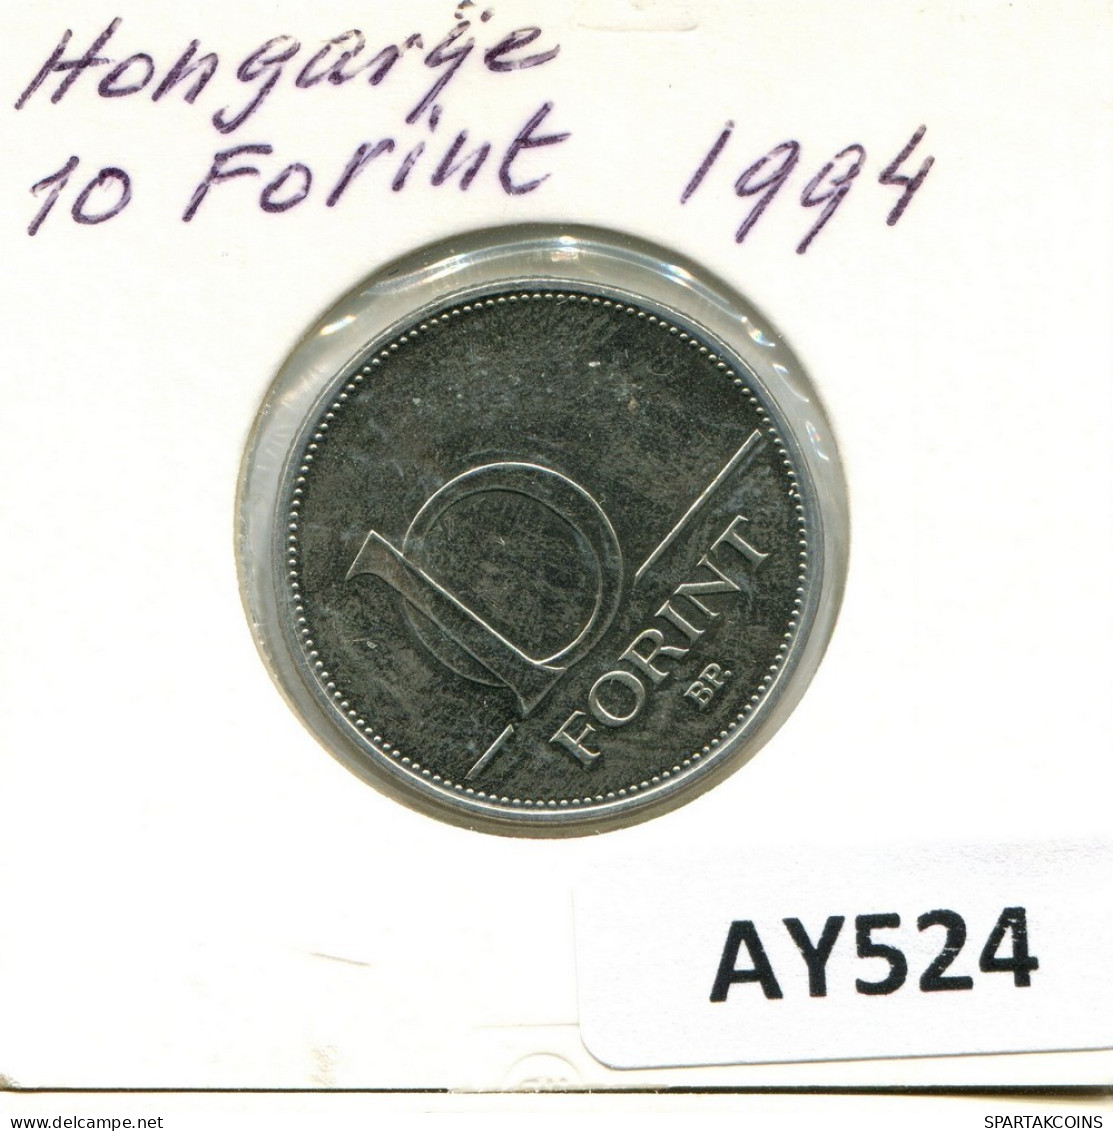 10 FORINT 1994 HONGRIE HUNGARY Pièce #AY524.F.A - Hungary